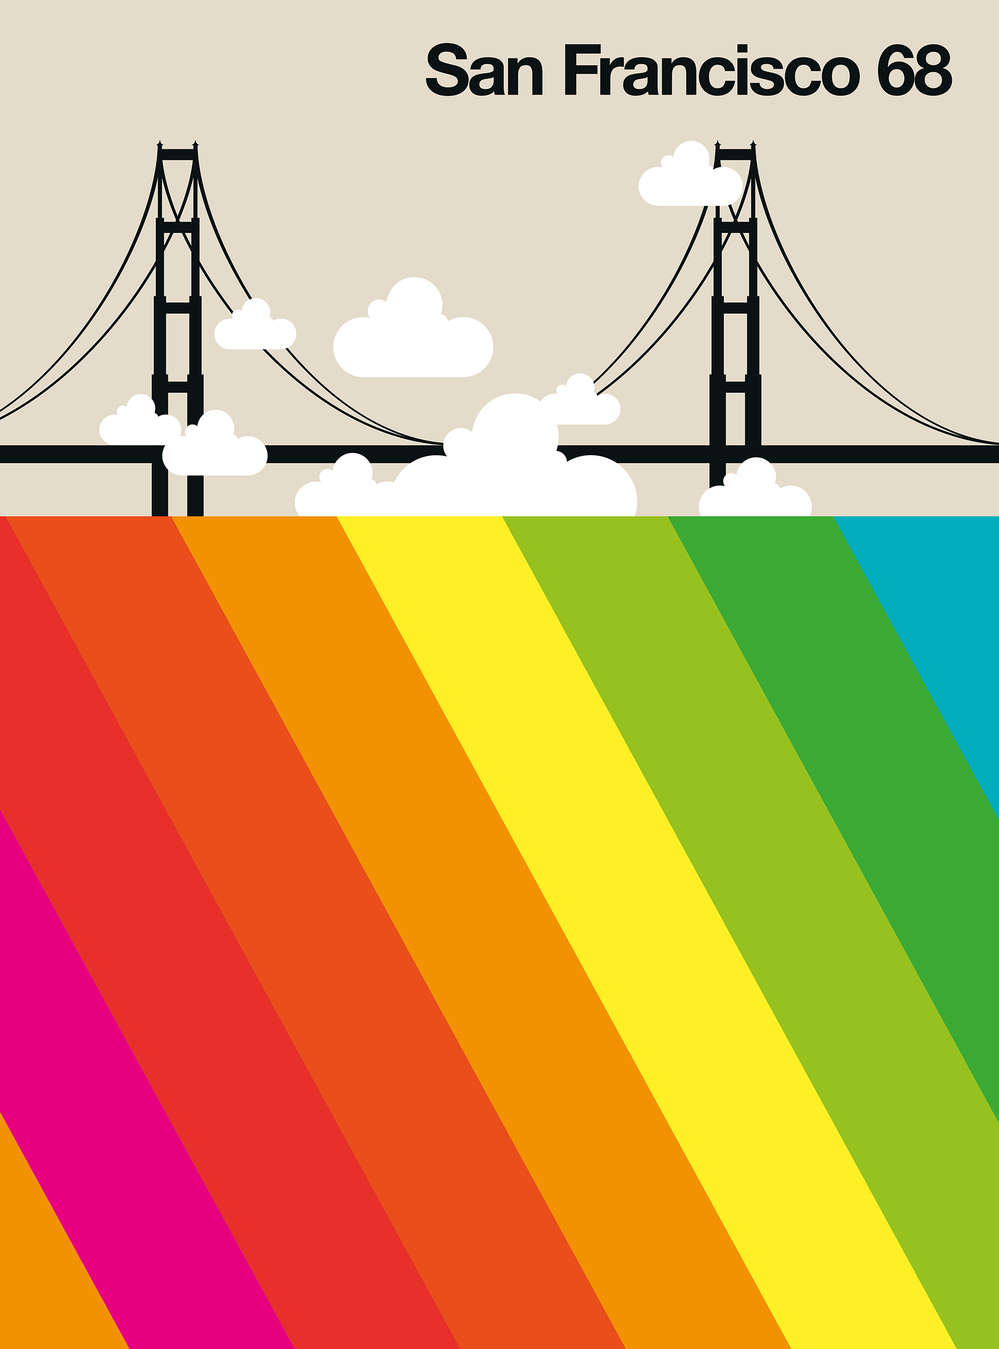             Fotomurali San Francisco 68 con Golden Gate Bridge e arcobaleno
        